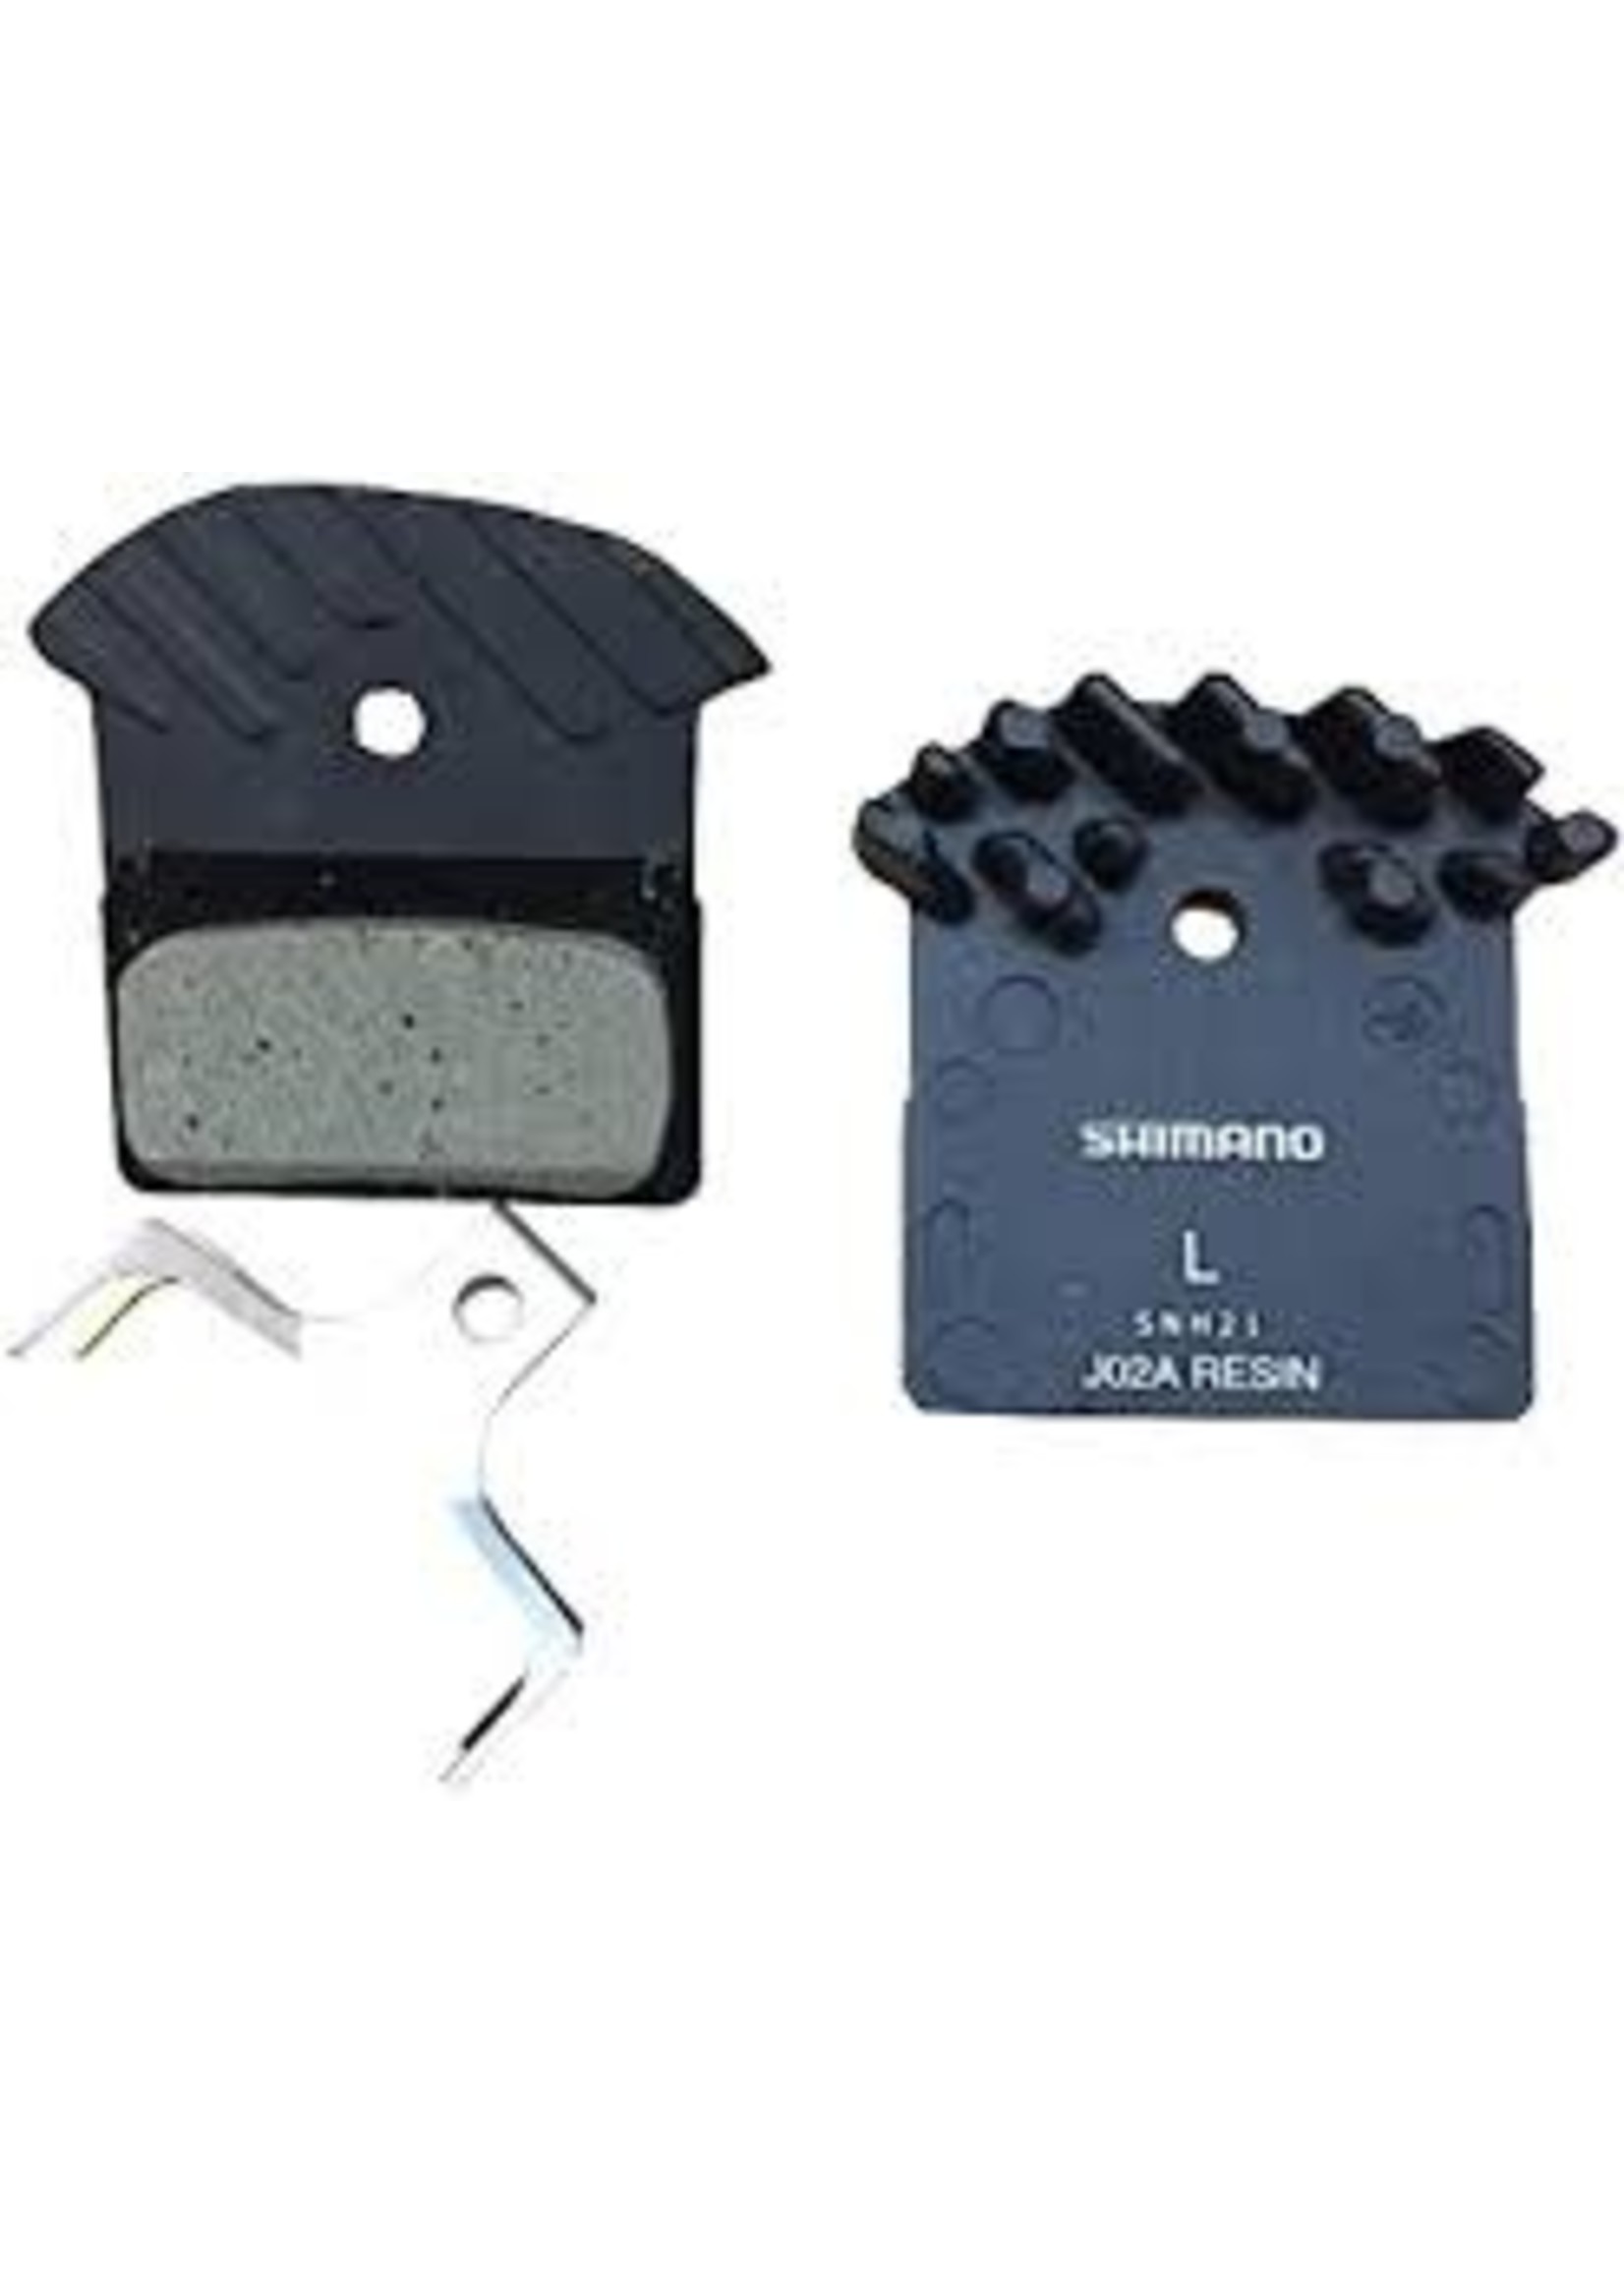 Shimano Shimano Resin J02A Bulk No Packaging